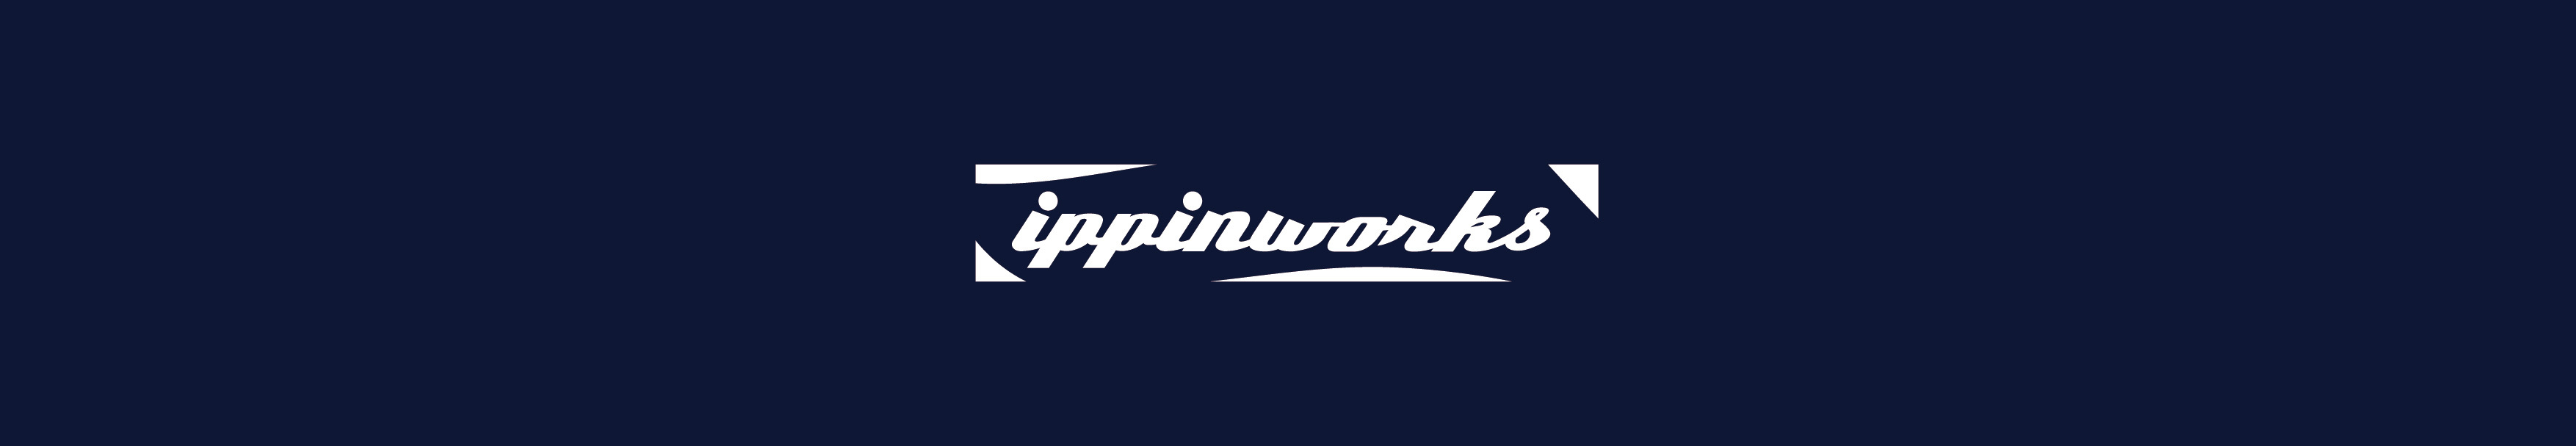 ippinworks